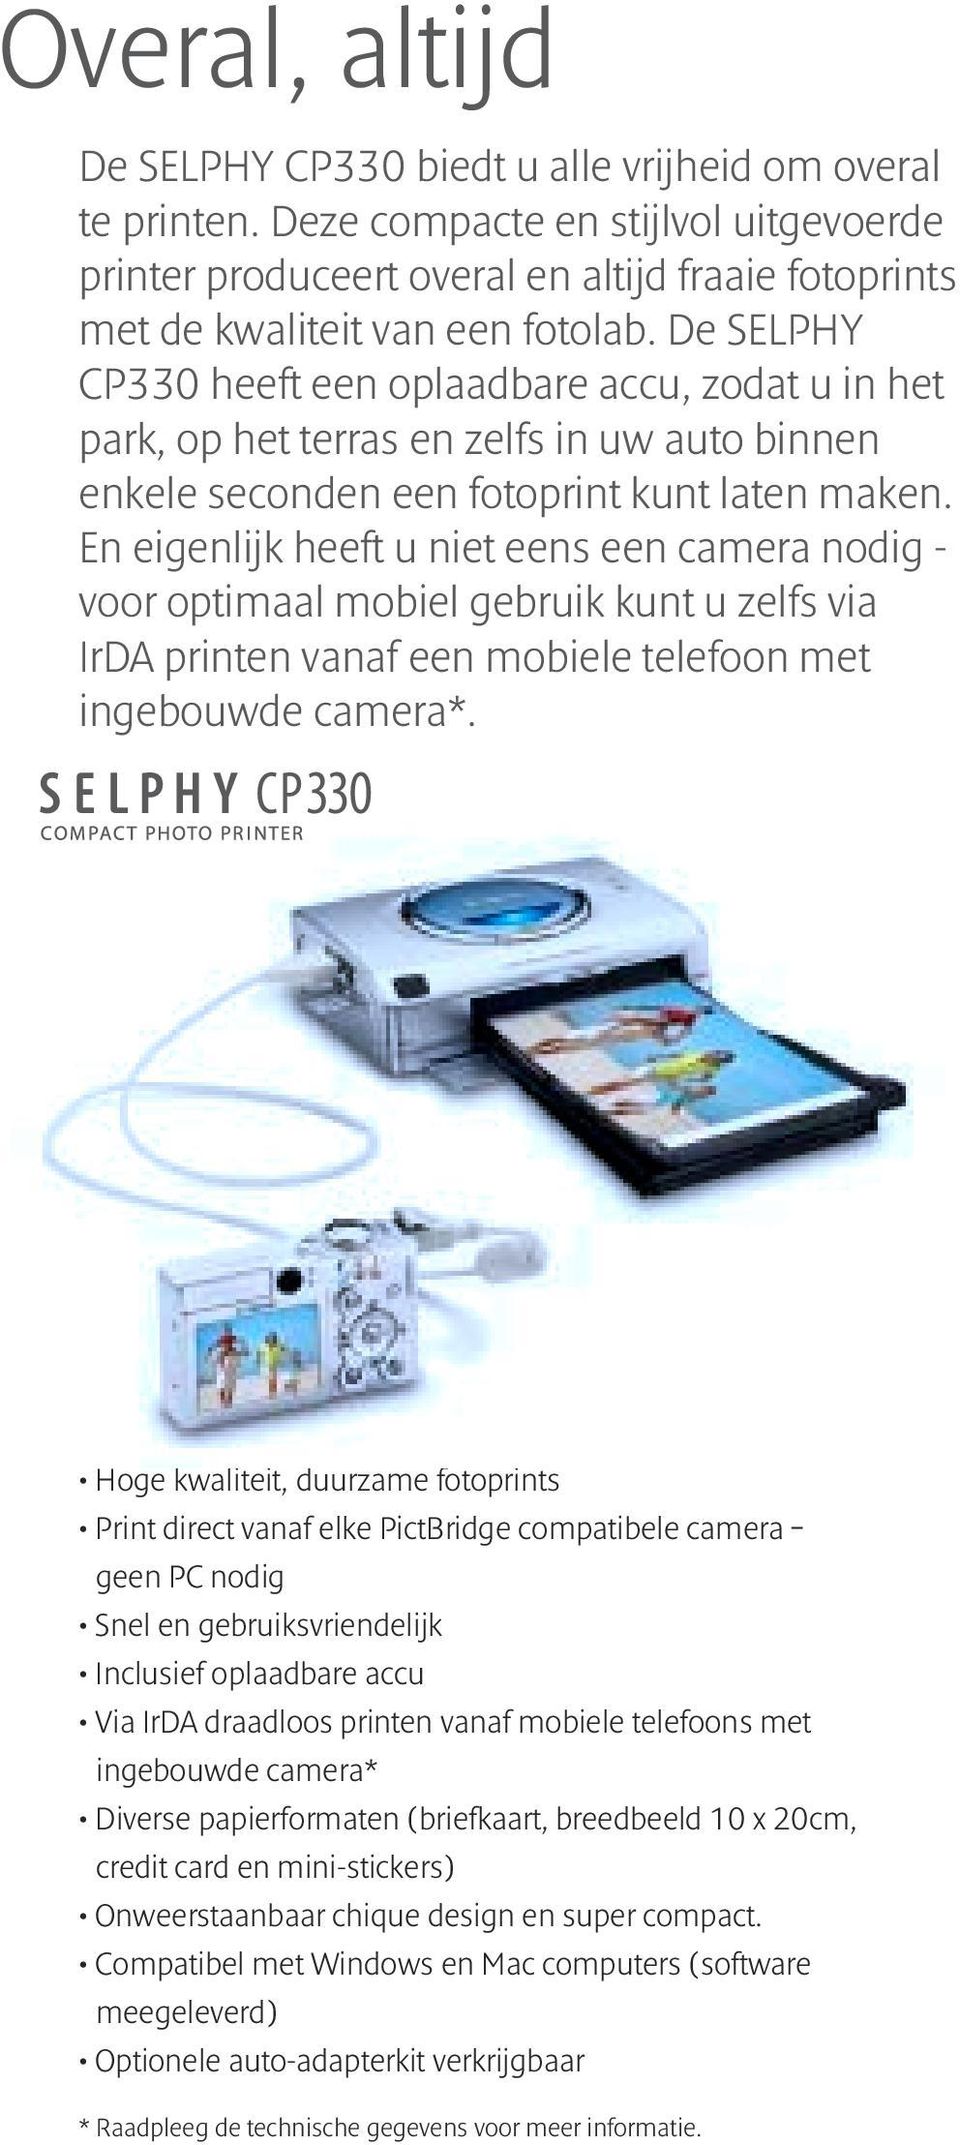 En eigenlijk heeft u niet eens een camera nodig - voor optimaal mobiel gebruik kunt u zelfs via IrDA printen vanaf een mobiele telefoon met ingebouwde camera*.